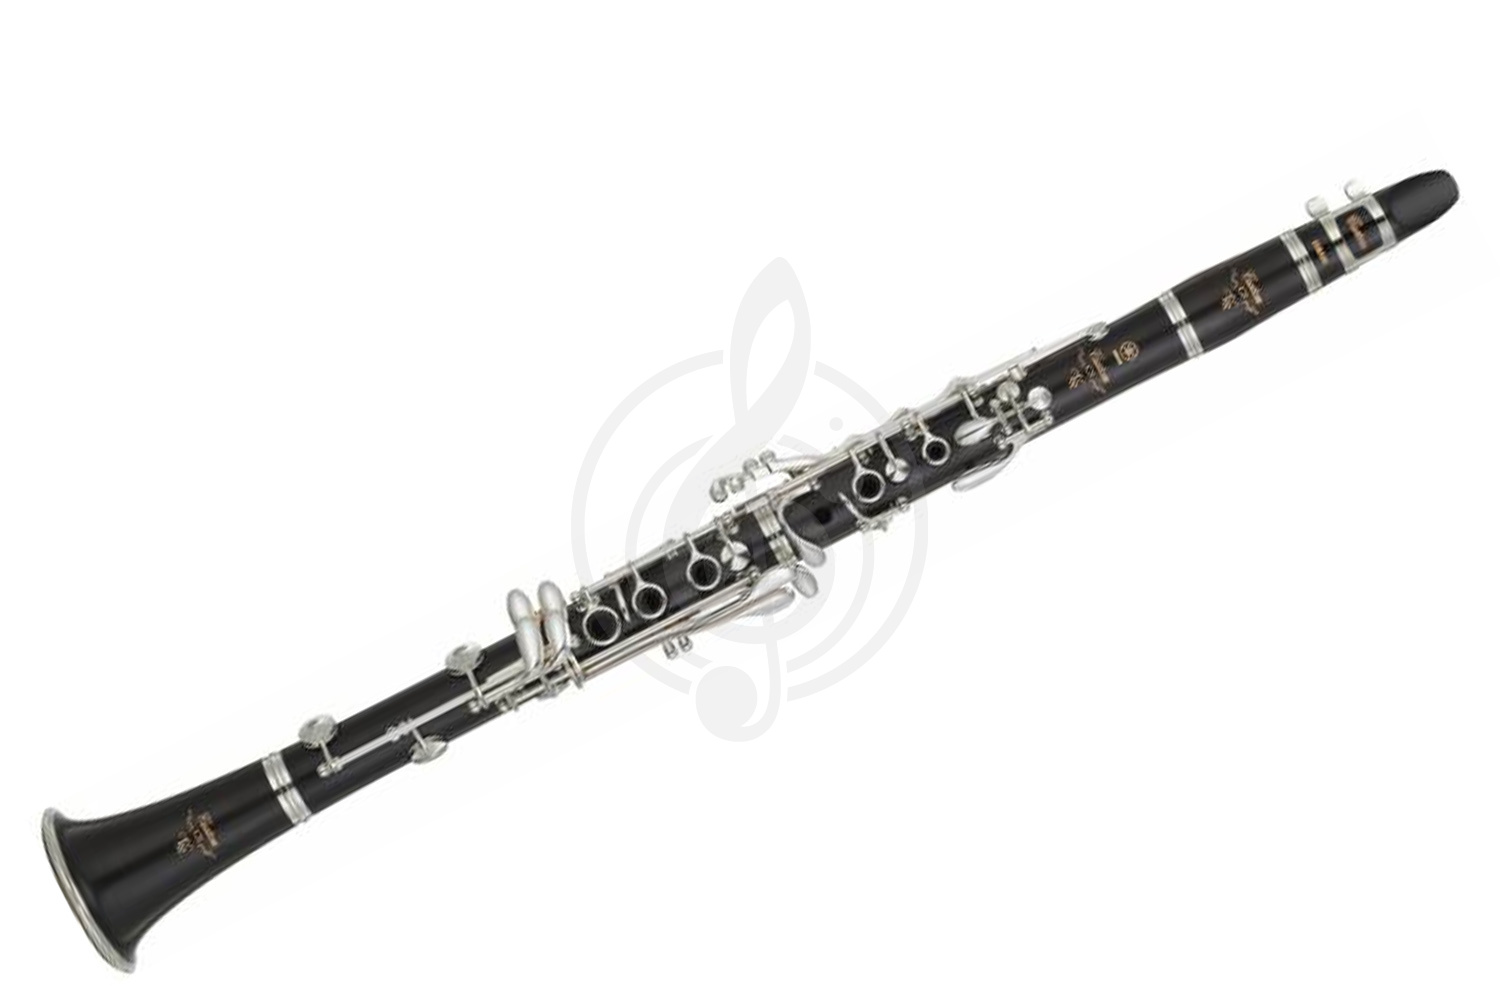 Кларнет Кларнеты Yamaha Yamaha YCL-CSVR - кларнет in Bb профессиональный, чёрное дерево, ручная работа, 65мм бочёнок YCL-CSVR - фото 1